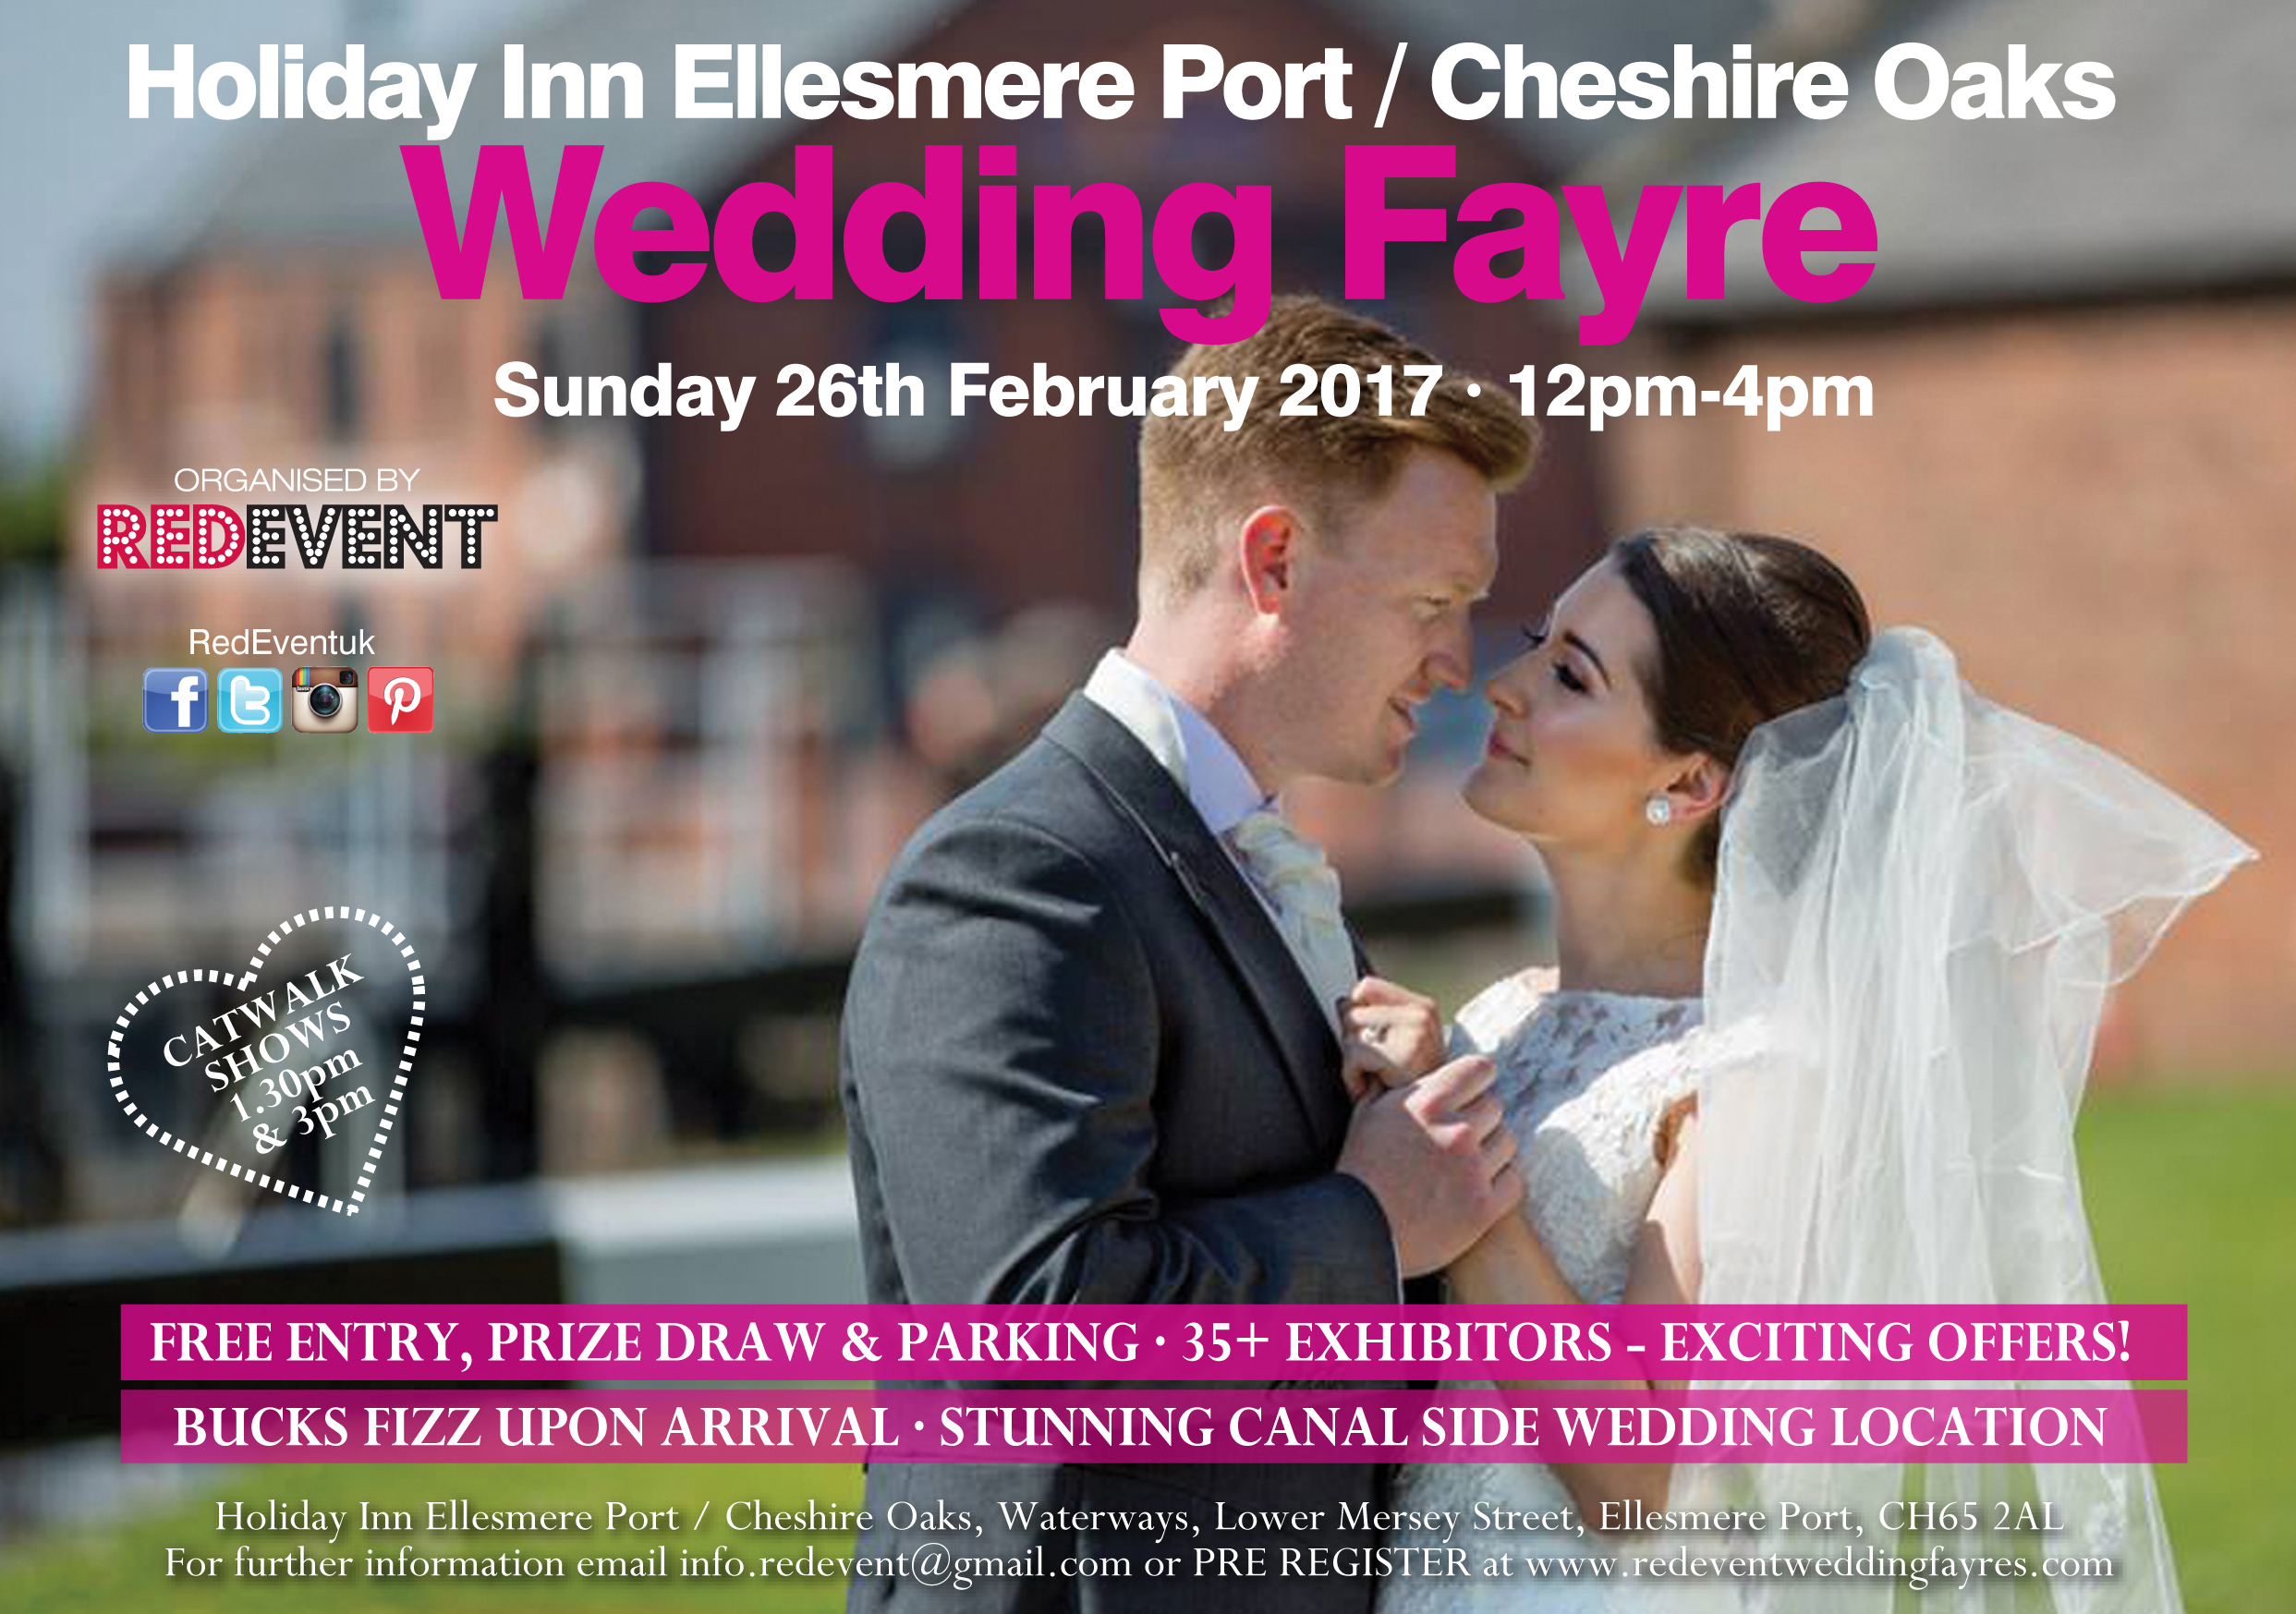 Holiday Inn Ellesmere Port Cheshire Oaks Wedding Fayre February 2017 flyer.jpg